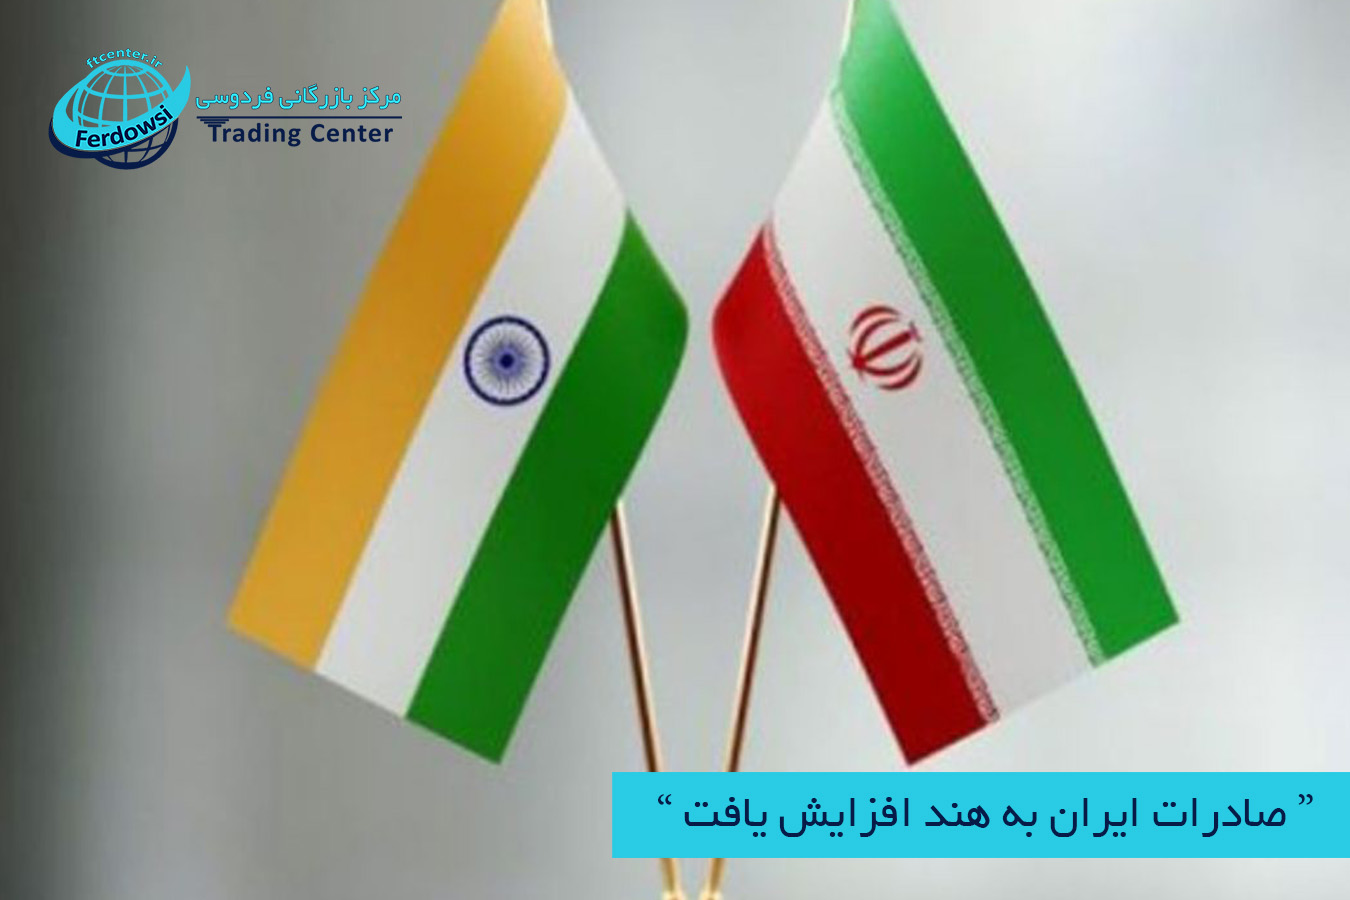 مرکز بازرگانی فردوسی-ferdowsi trading center-صادرات ایران به هند